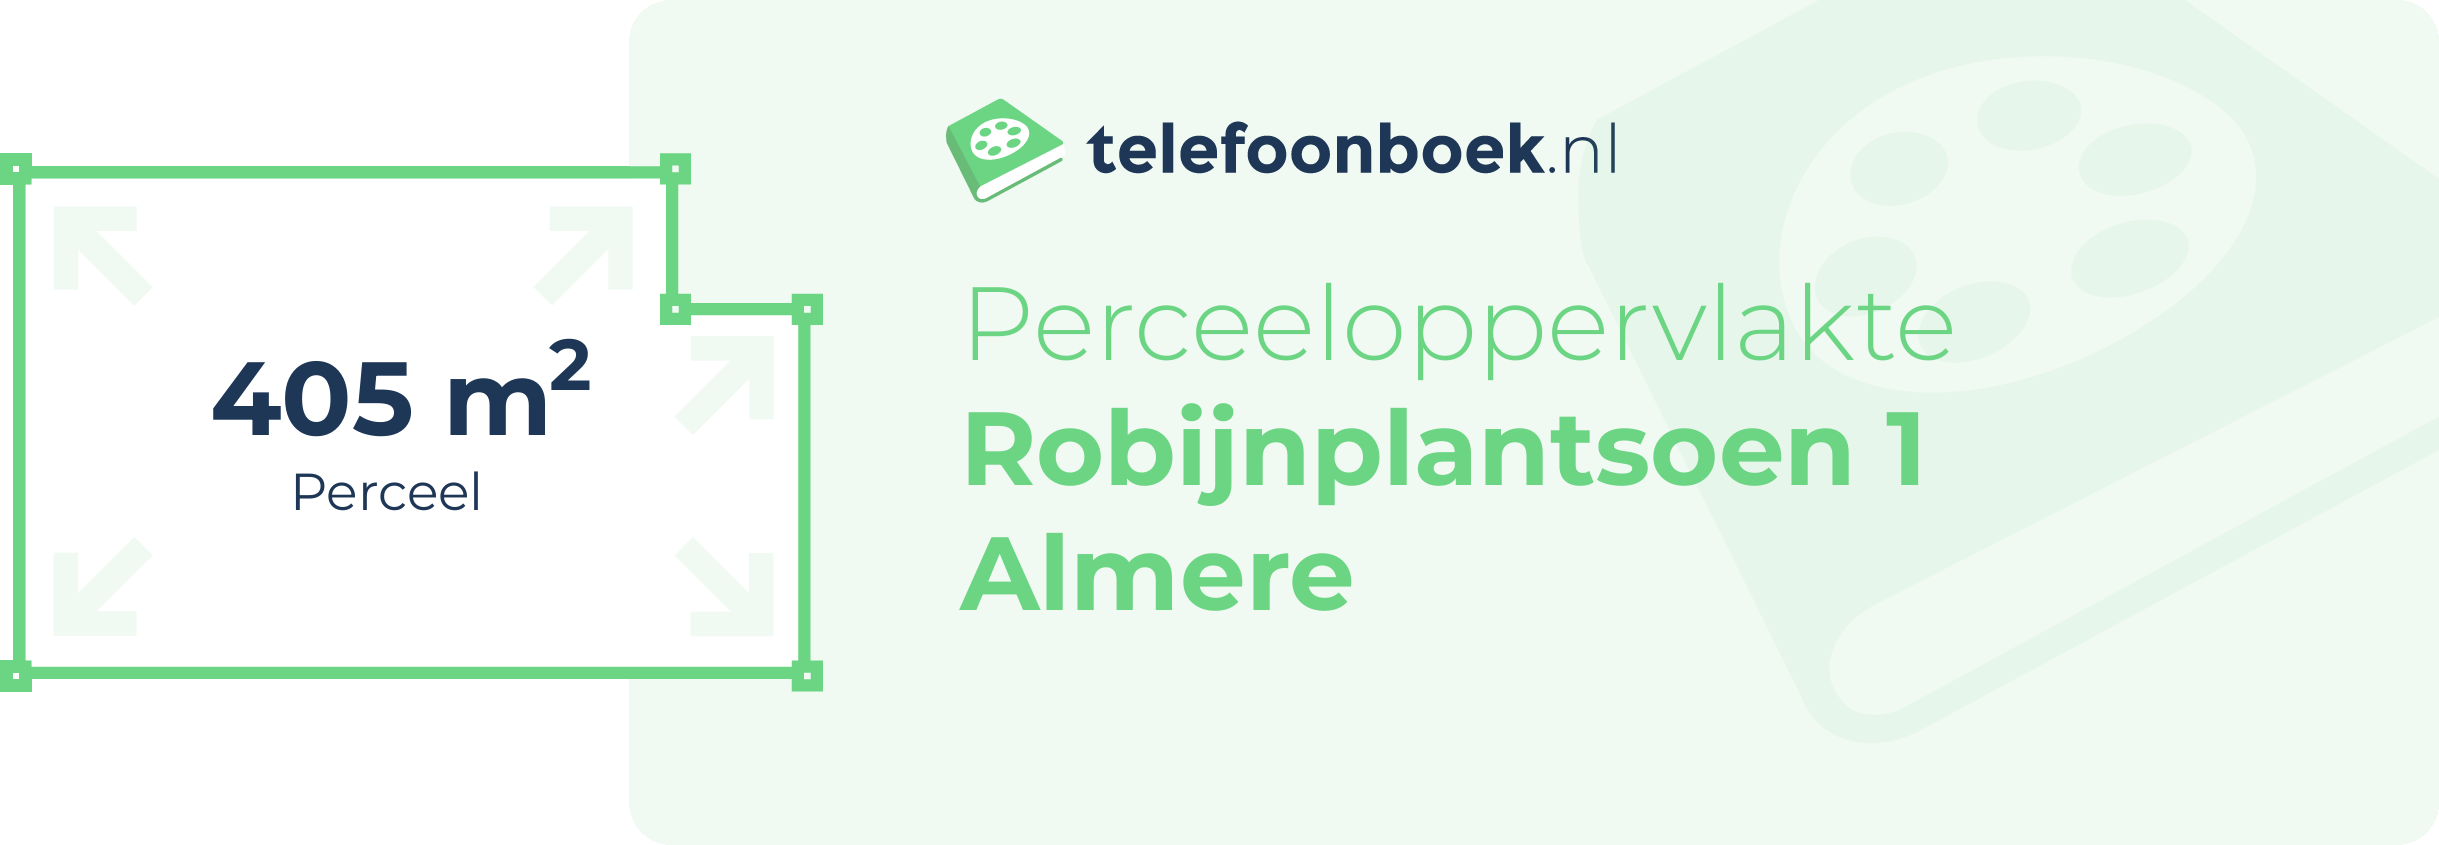 Perceeloppervlakte Robijnplantsoen 1 Almere